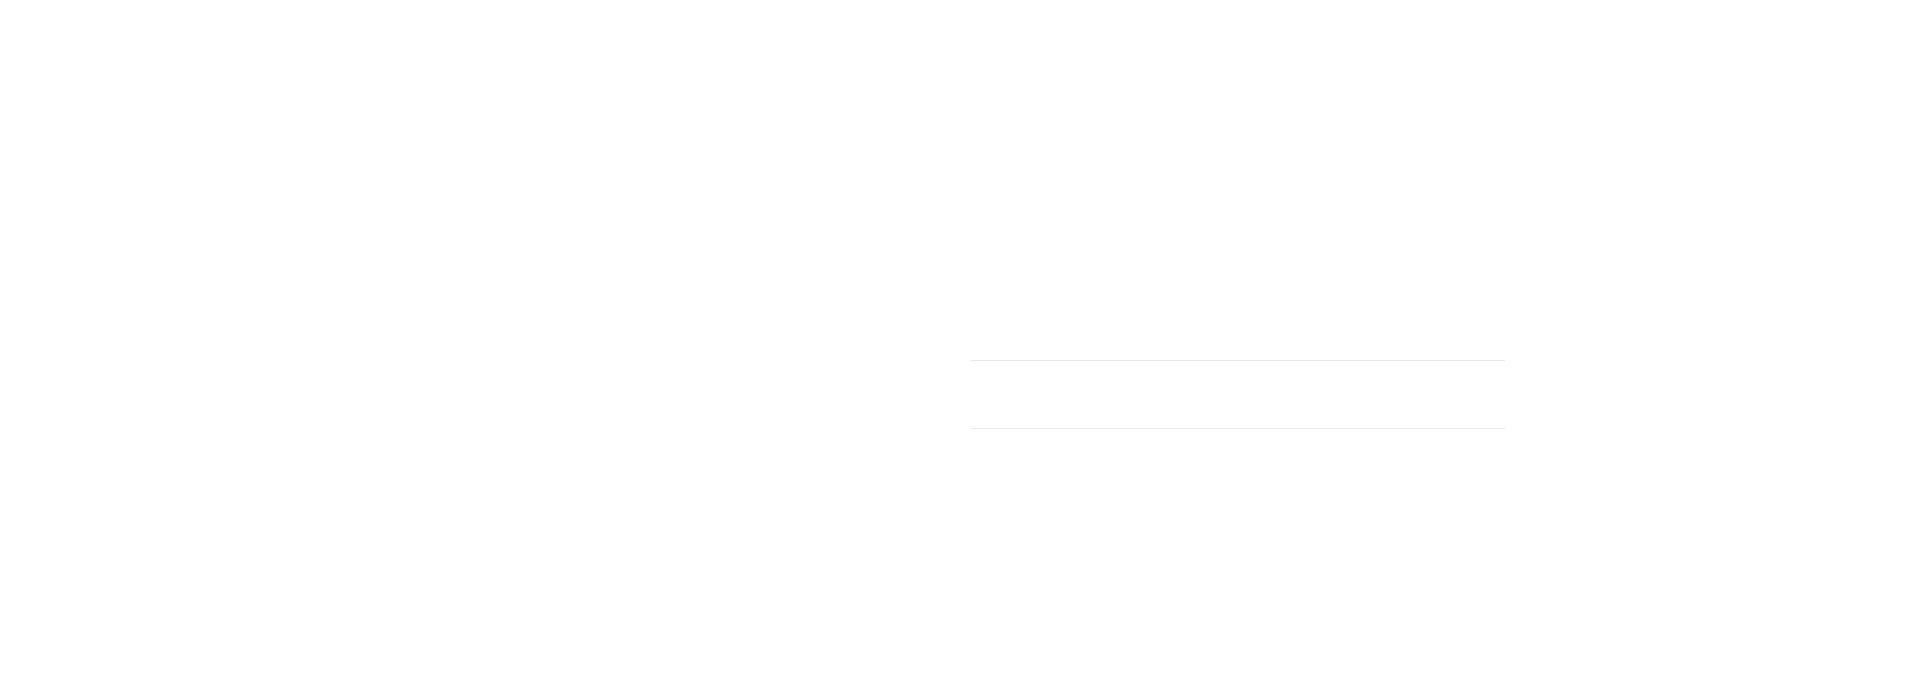 South florida full spectrum